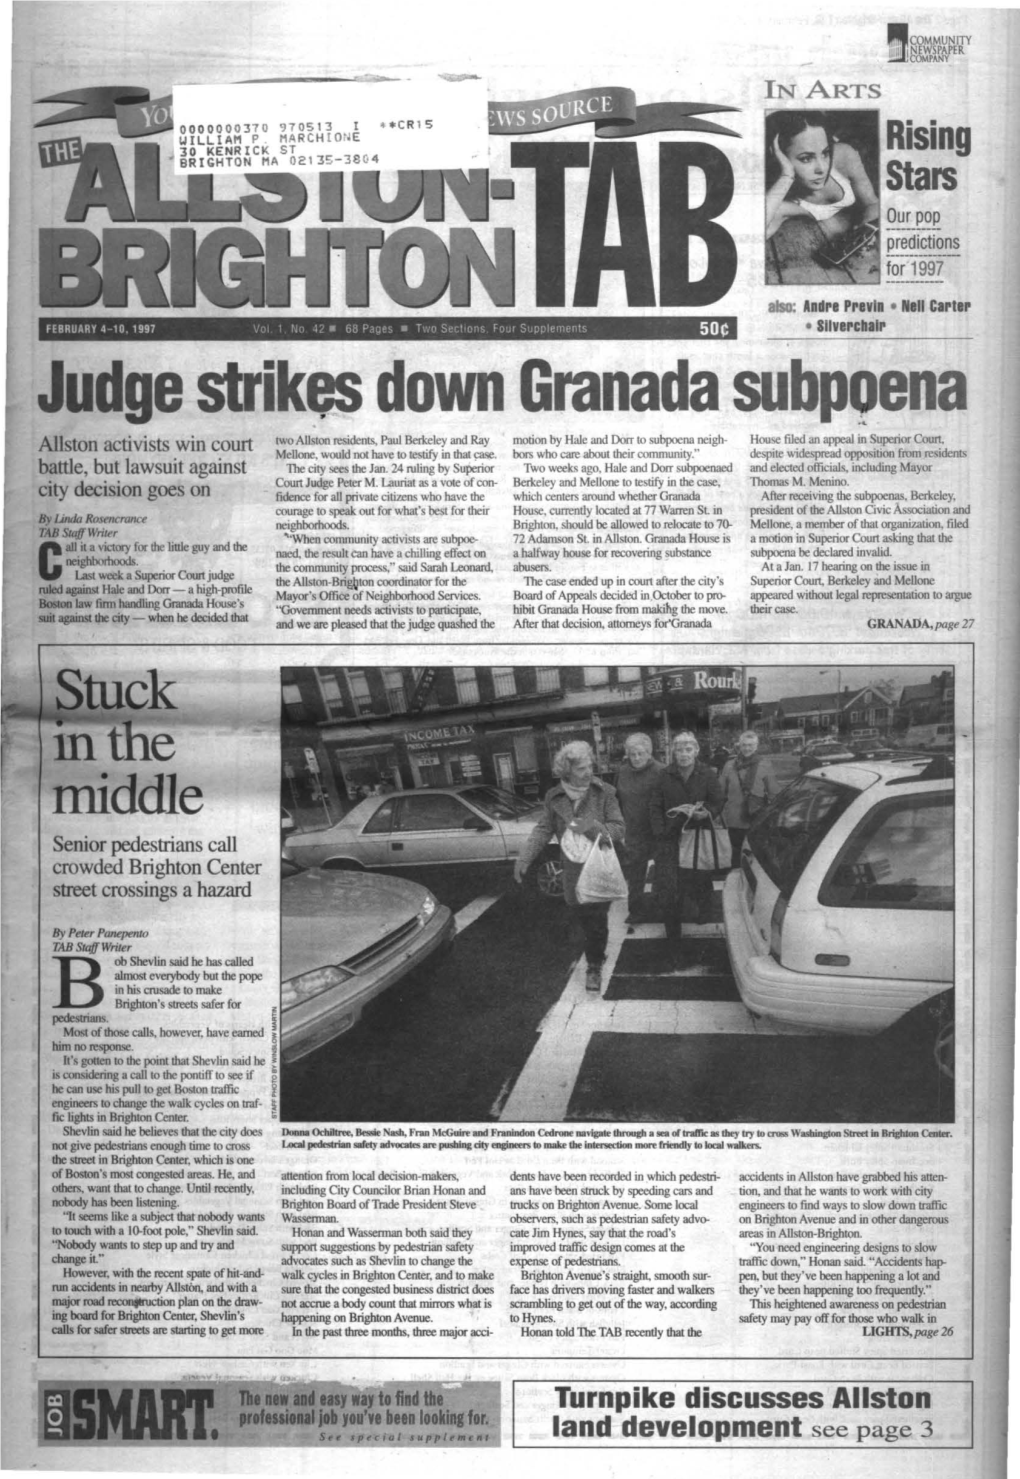 Judge Strikes Down Granada Subp9ena